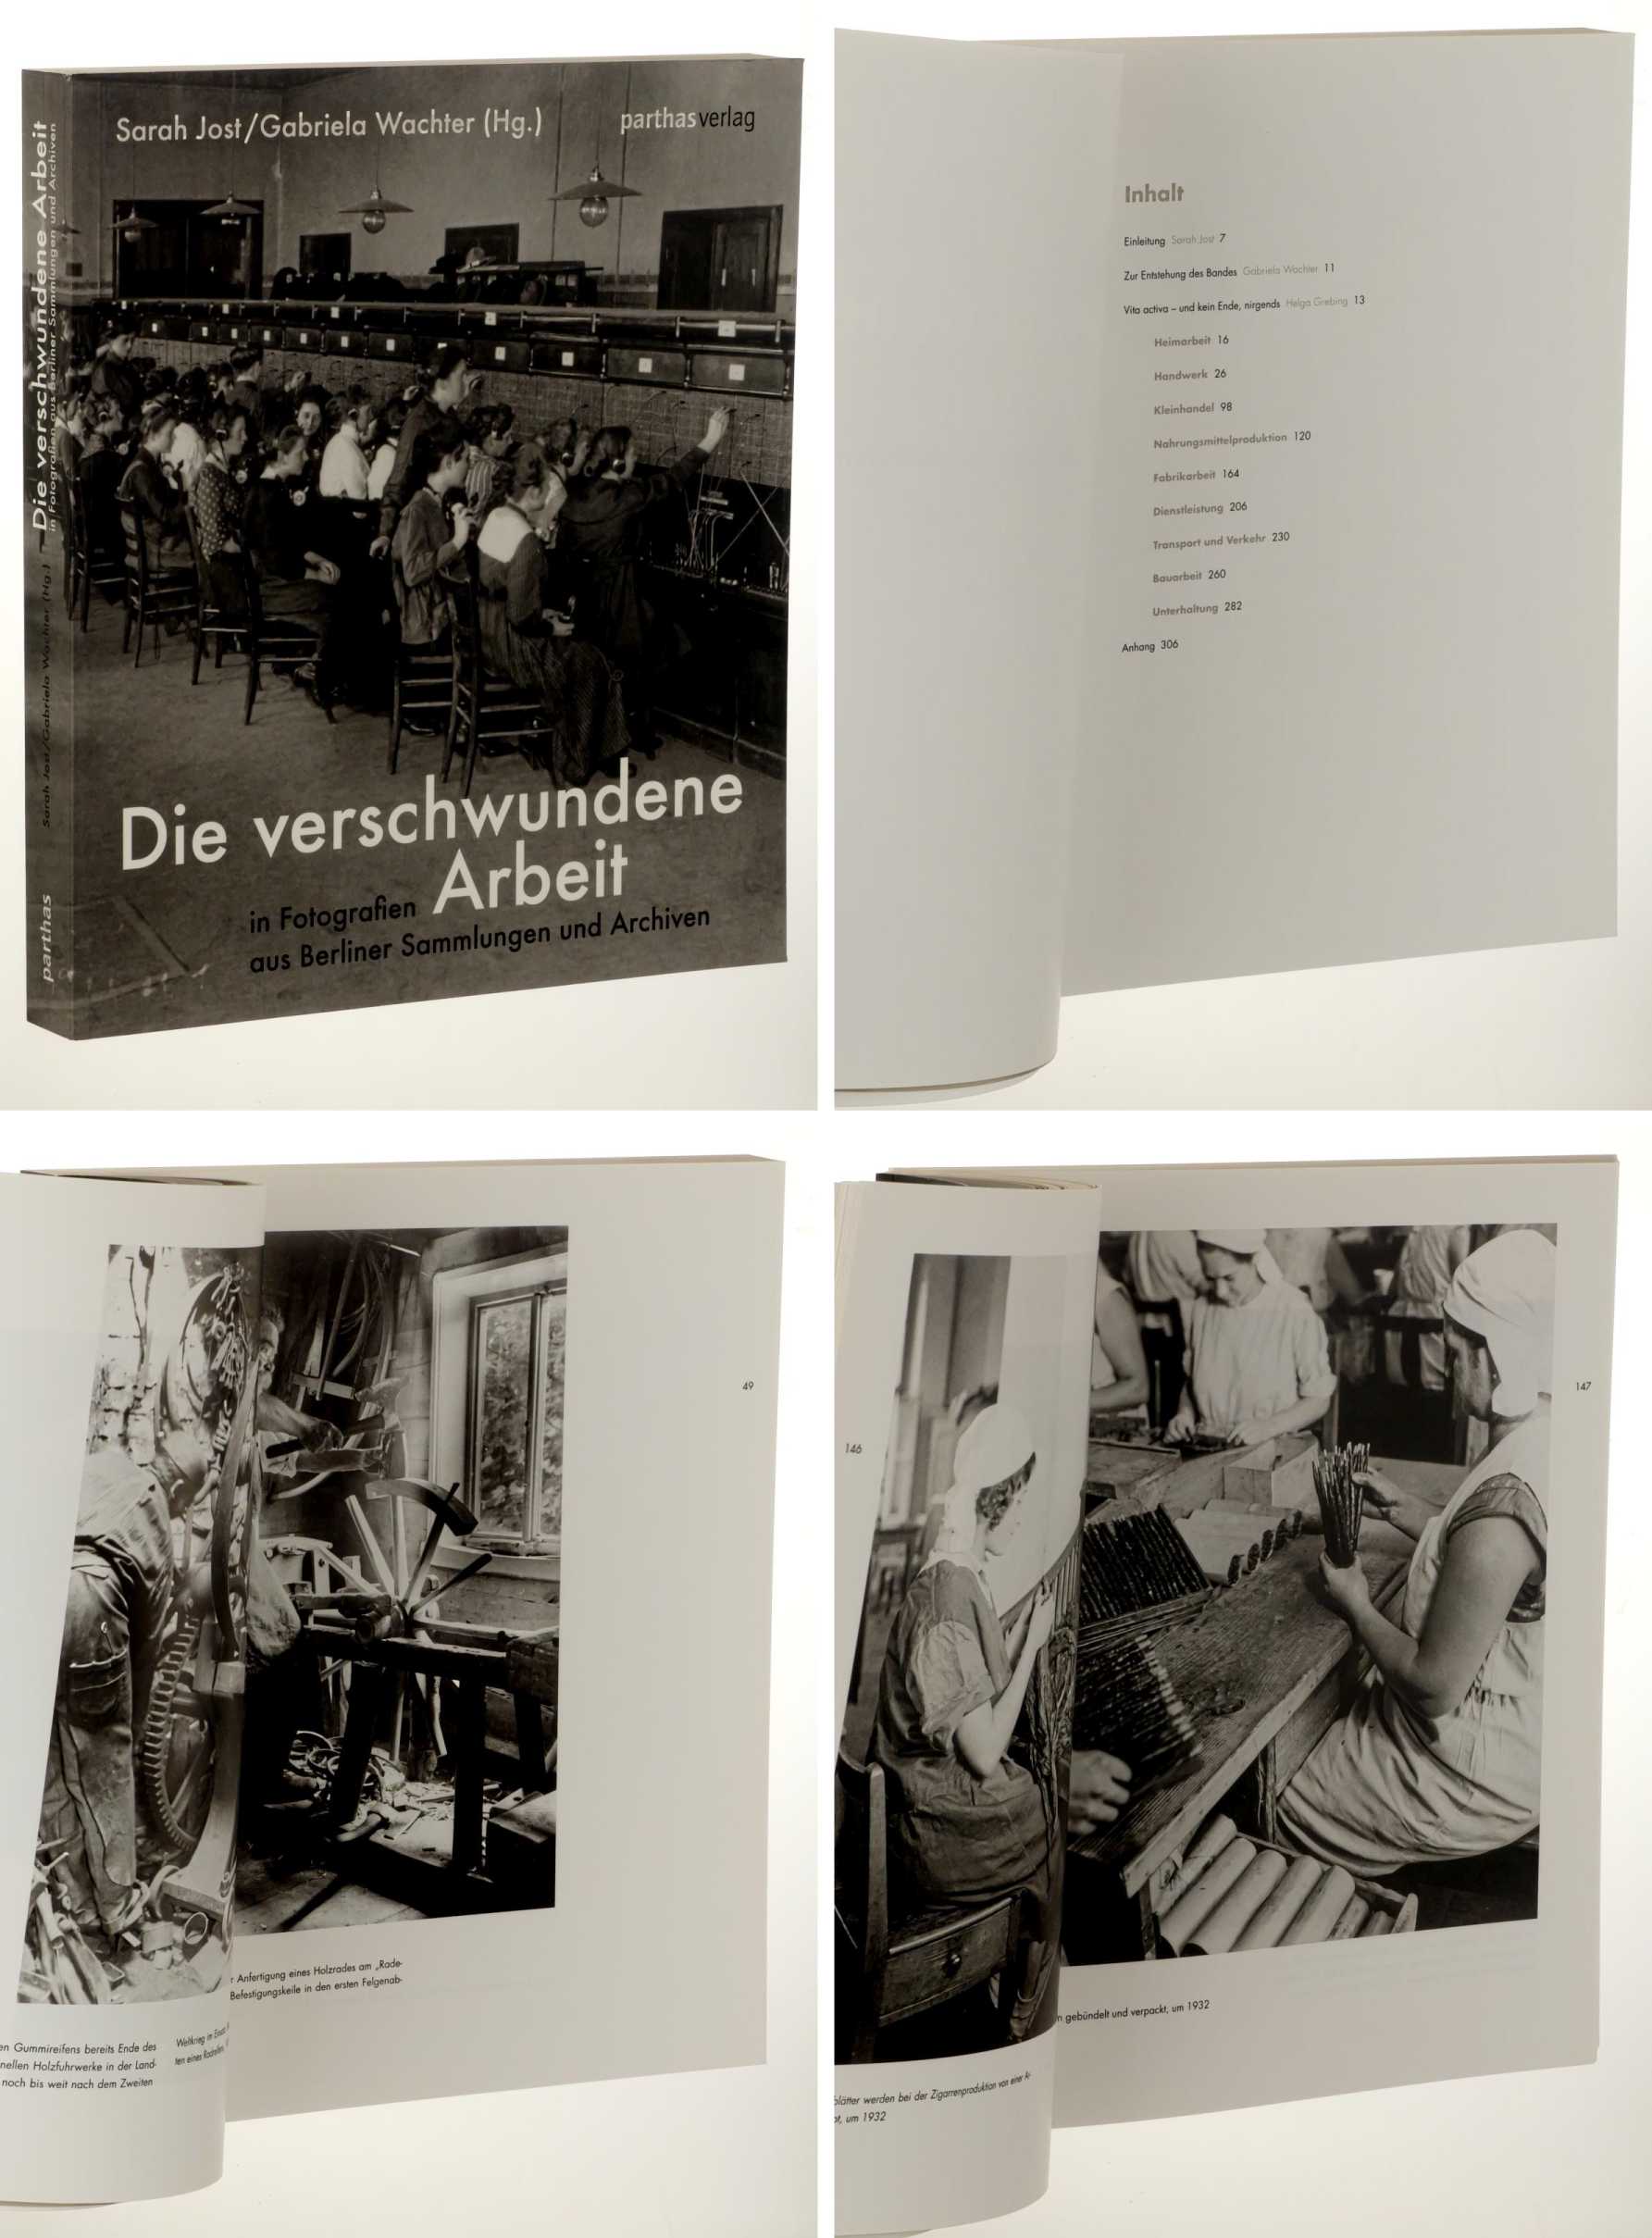 Jost, Sarah/ Gabriela Wachter (hg.):  Die verschwundene Arbeit in Fotografien aus Berliner Sammlungen und Archiven. 